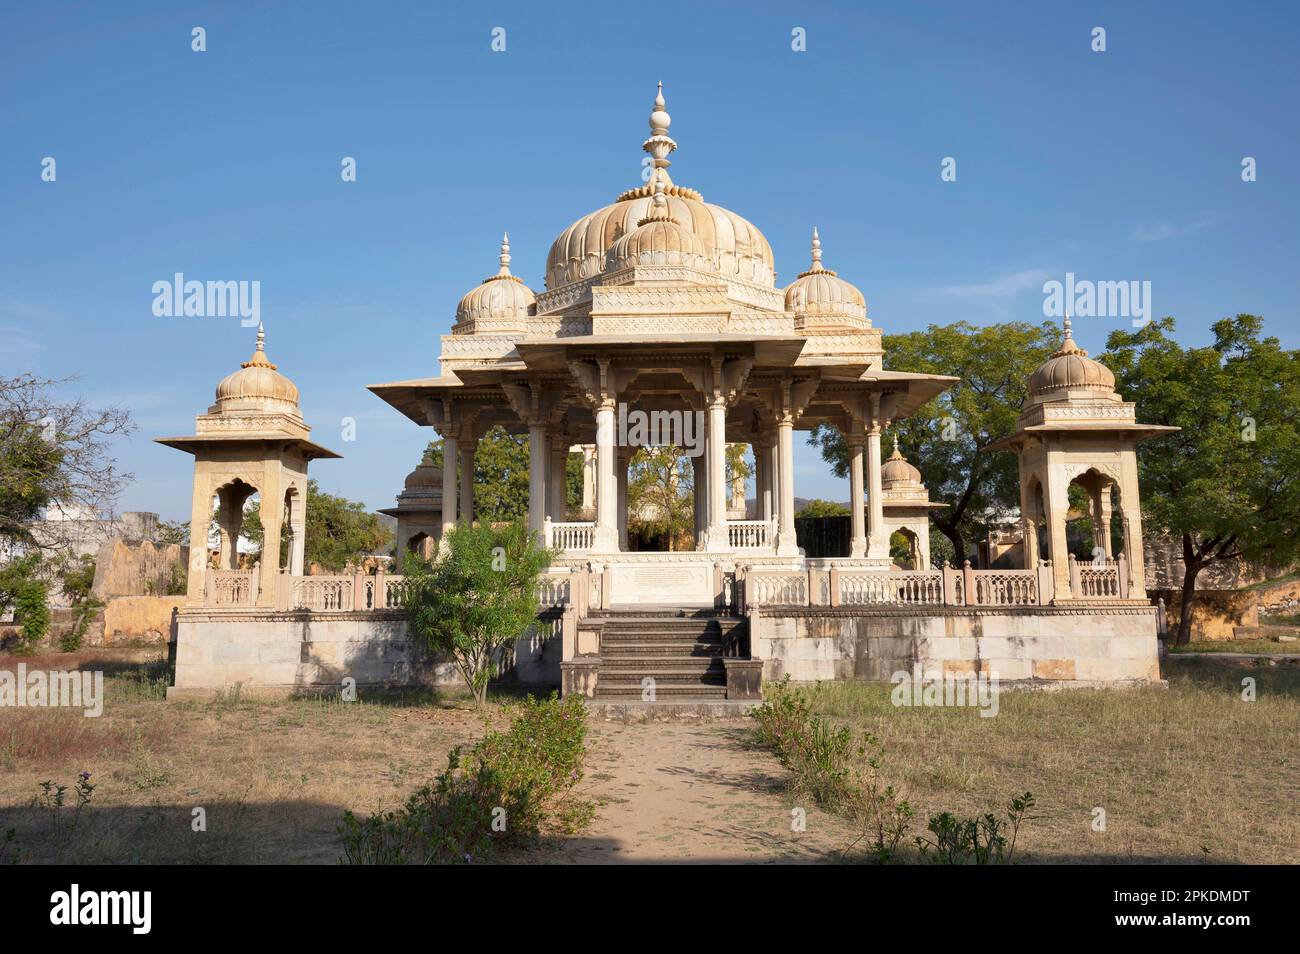 Maharaniyon Ki Chhatriyan, ce site présente des monuments funéraires traditionnels honorant les femmes royales du passé, situé à Jaipur, Rajasthan, Inde Banque D'Images